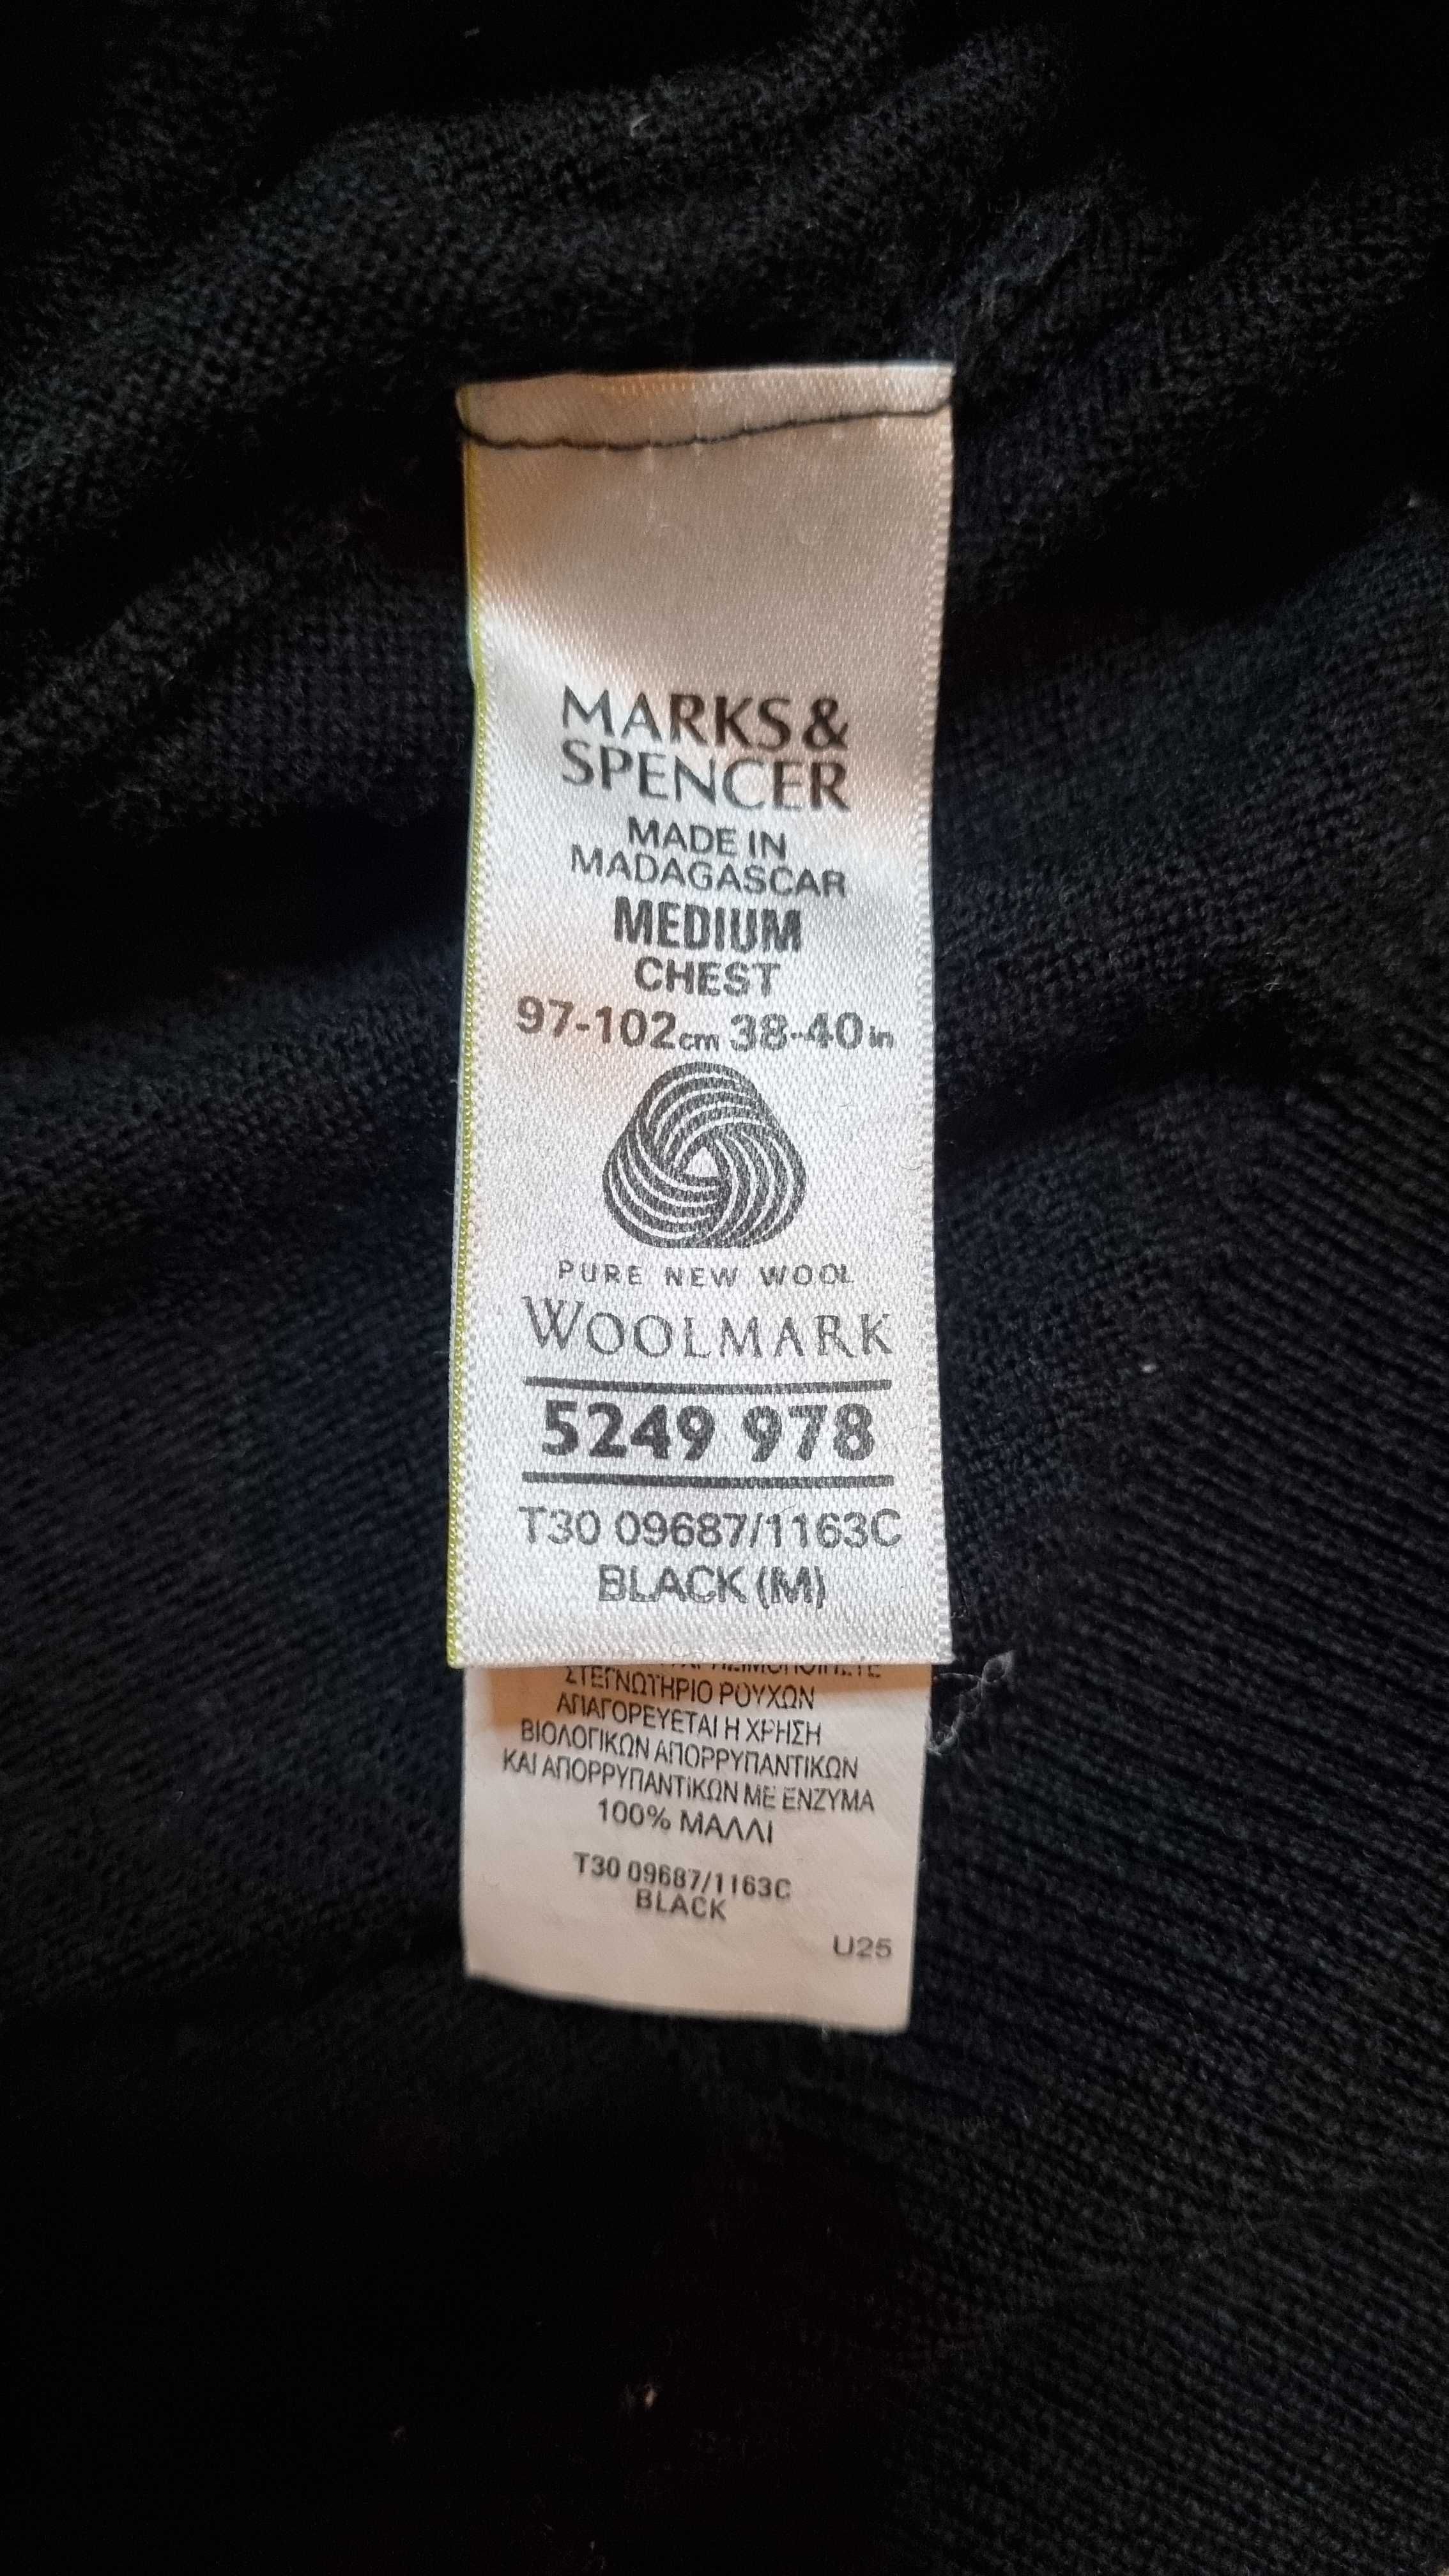 Sweter czarny okrągły dekolt Marks & Spencer 100% merino, rozm. M